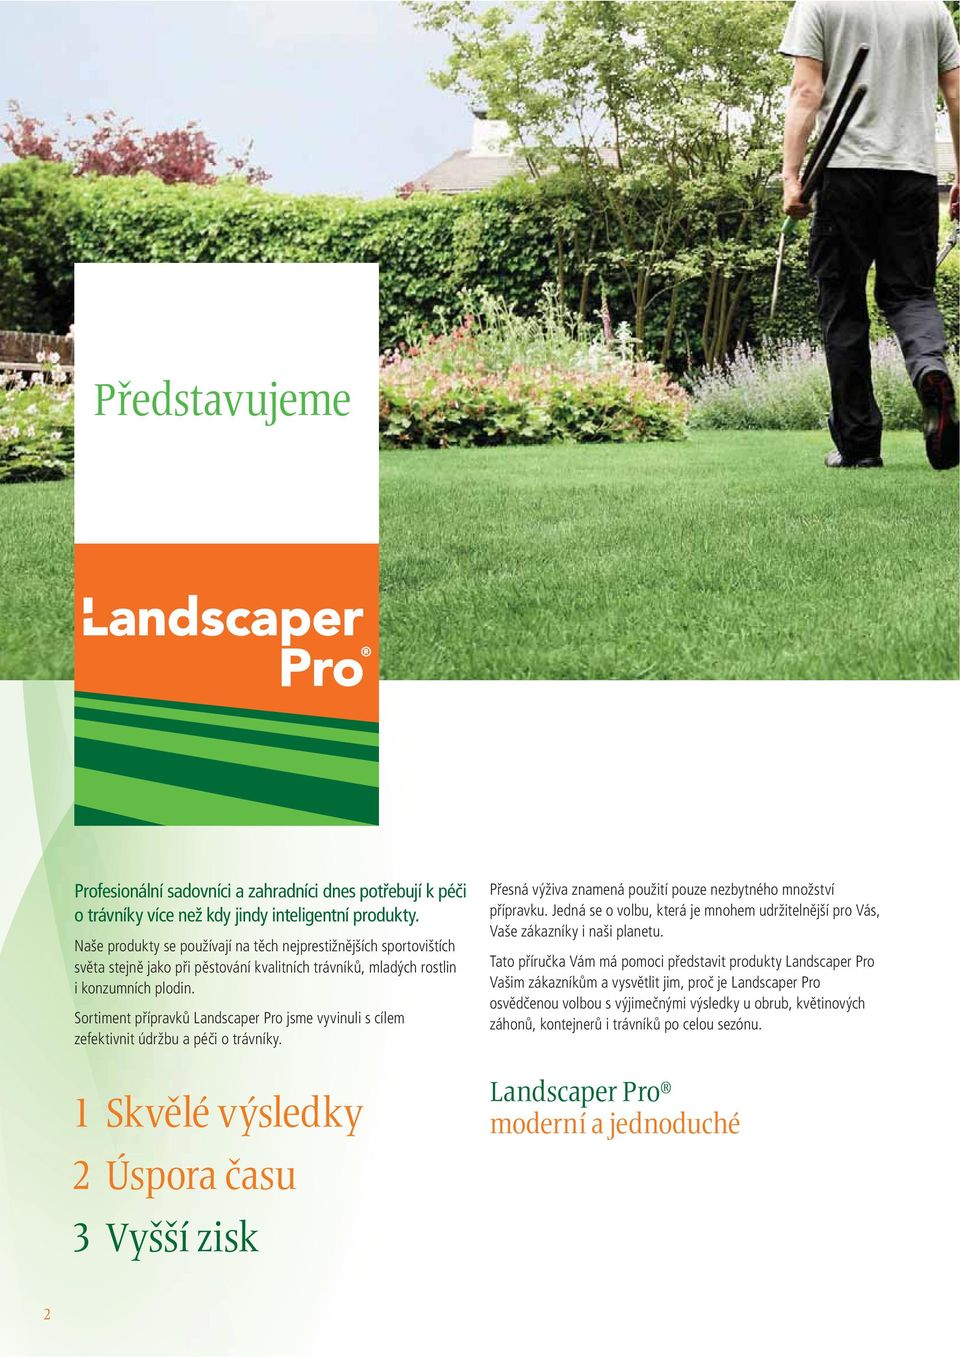 Sortiment přípravků Landscaper Pro jsme vyvinuli s cílem zefektivnit údržbu a péči o trávníky.